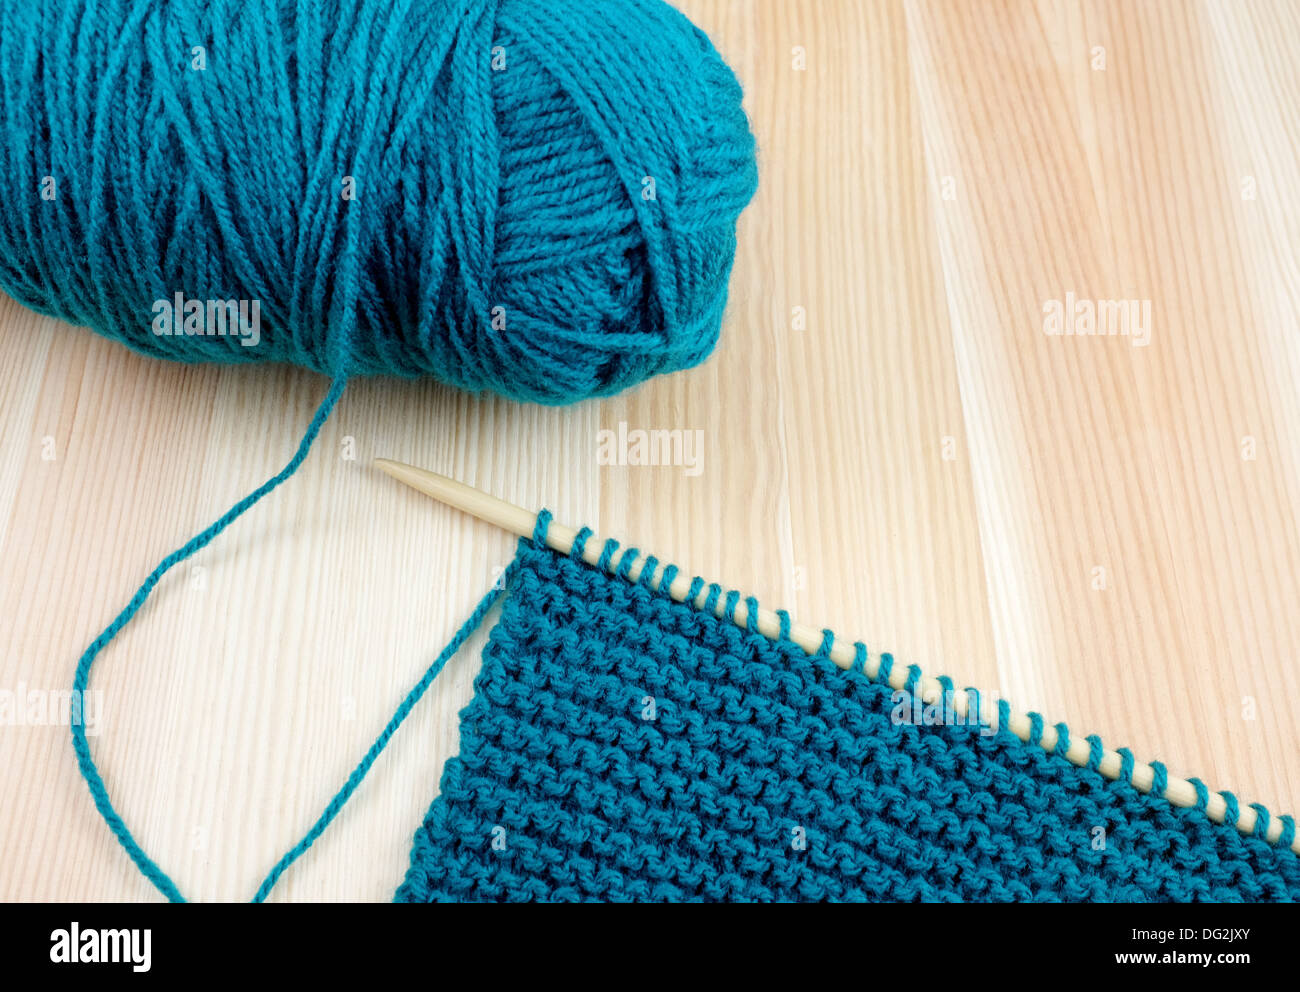 Libre de balle de laine bleu sarcelle avec longueur de garter stitch sur une aiguille à tricoter, sur bois Banque D'Images